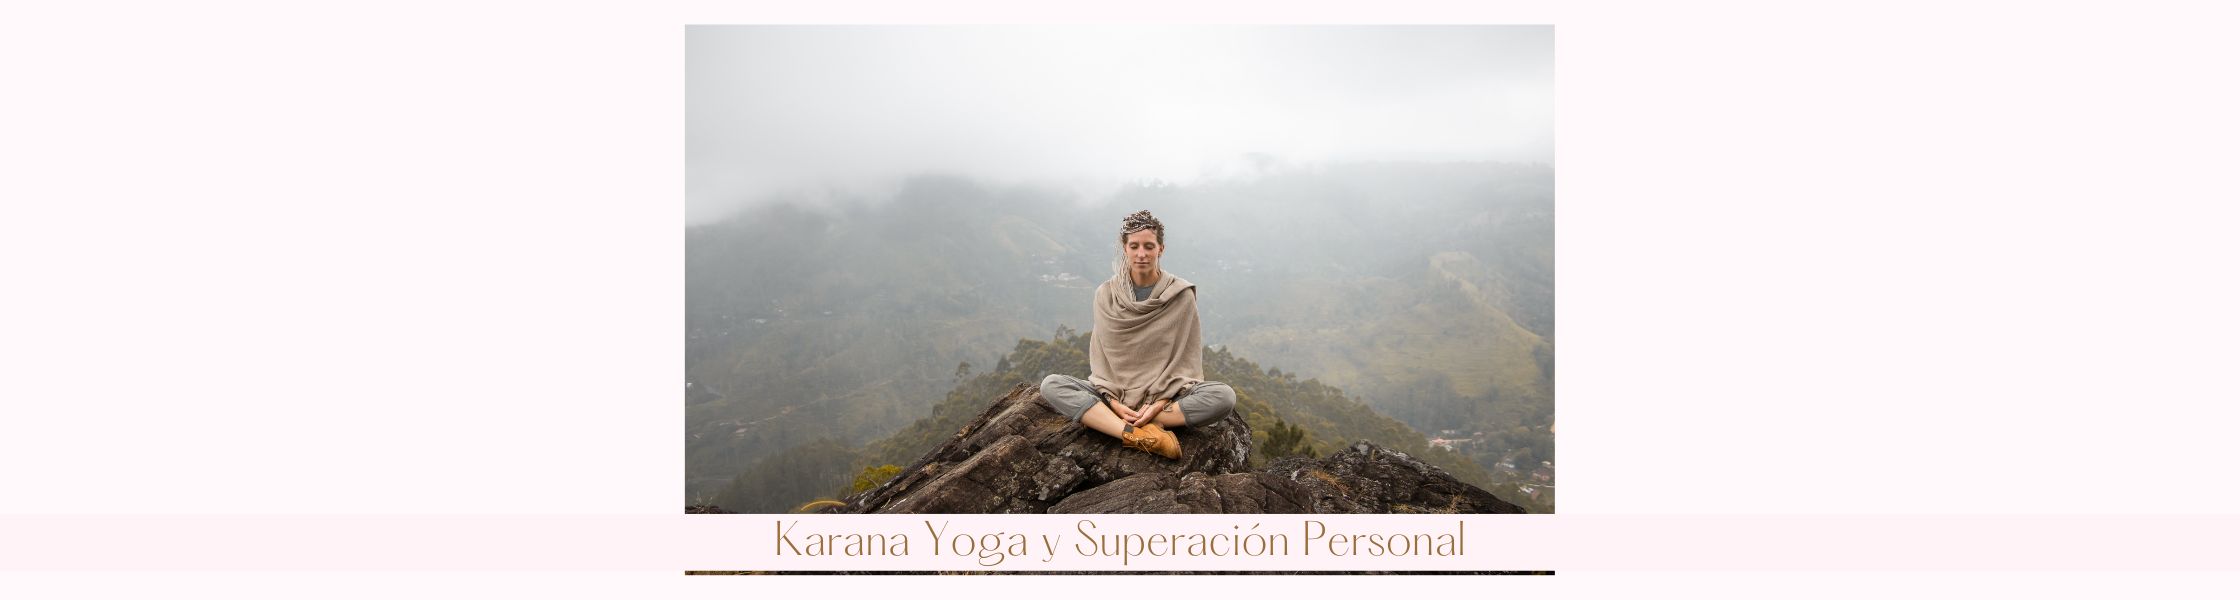 Karana Yoga y Superación Personal